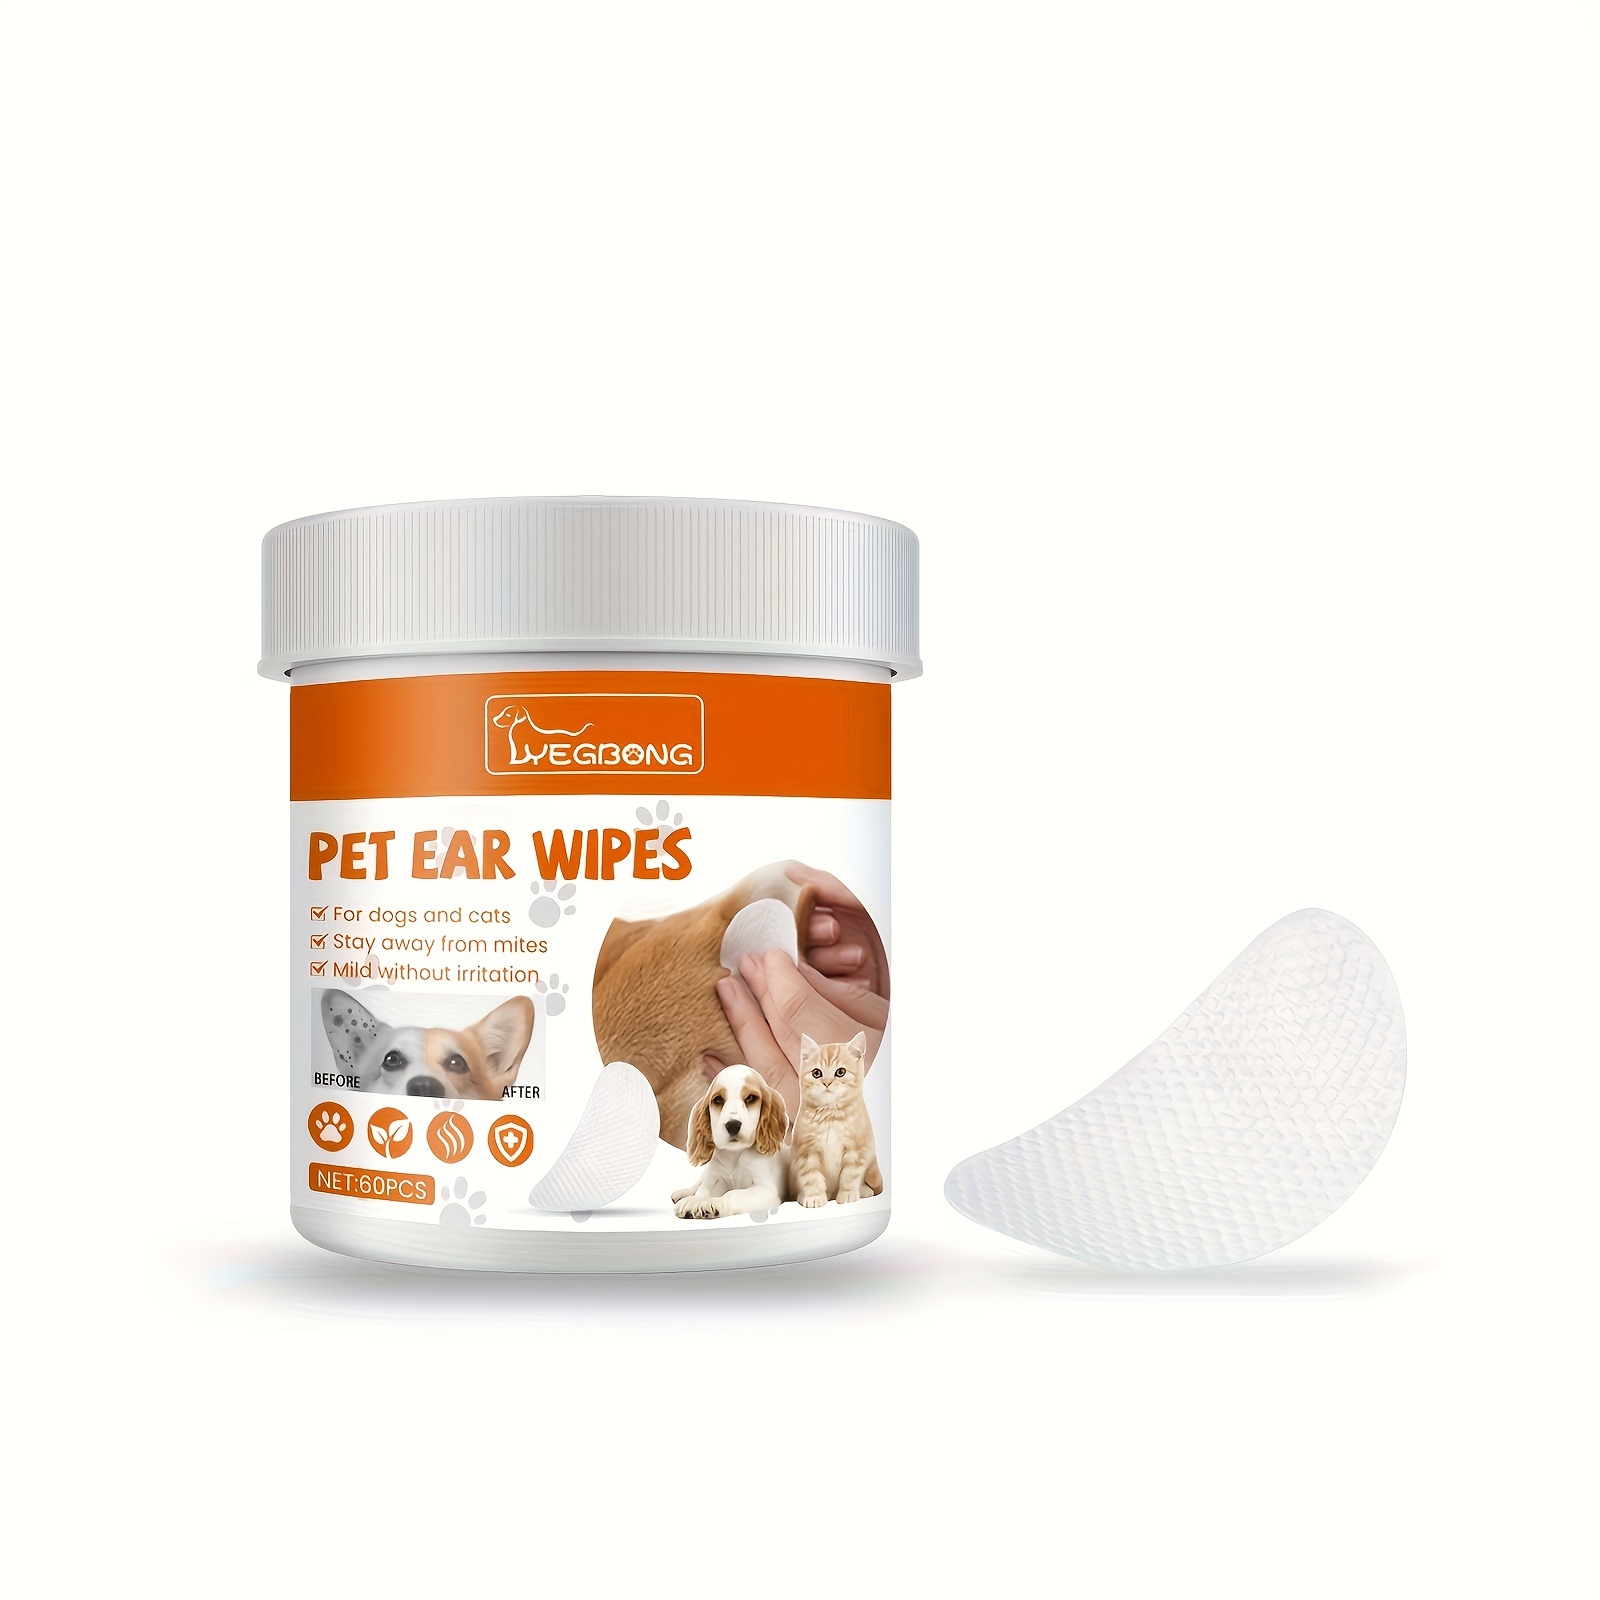 Bio Wipe Toallitas Limpiadoras de Dientes para Perro y Gato